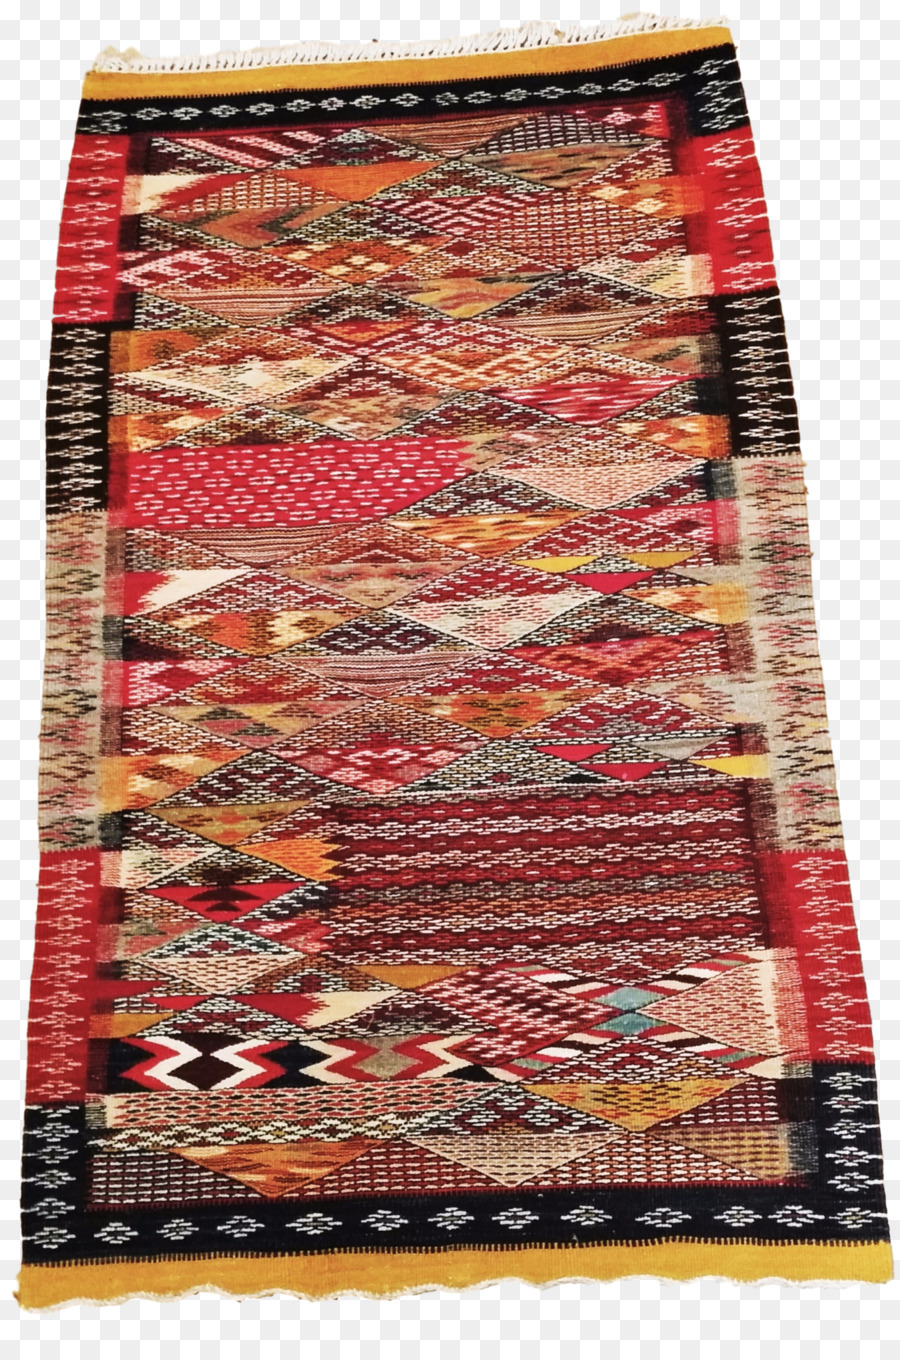 Teppich Bodenbelag Textil - Teppich